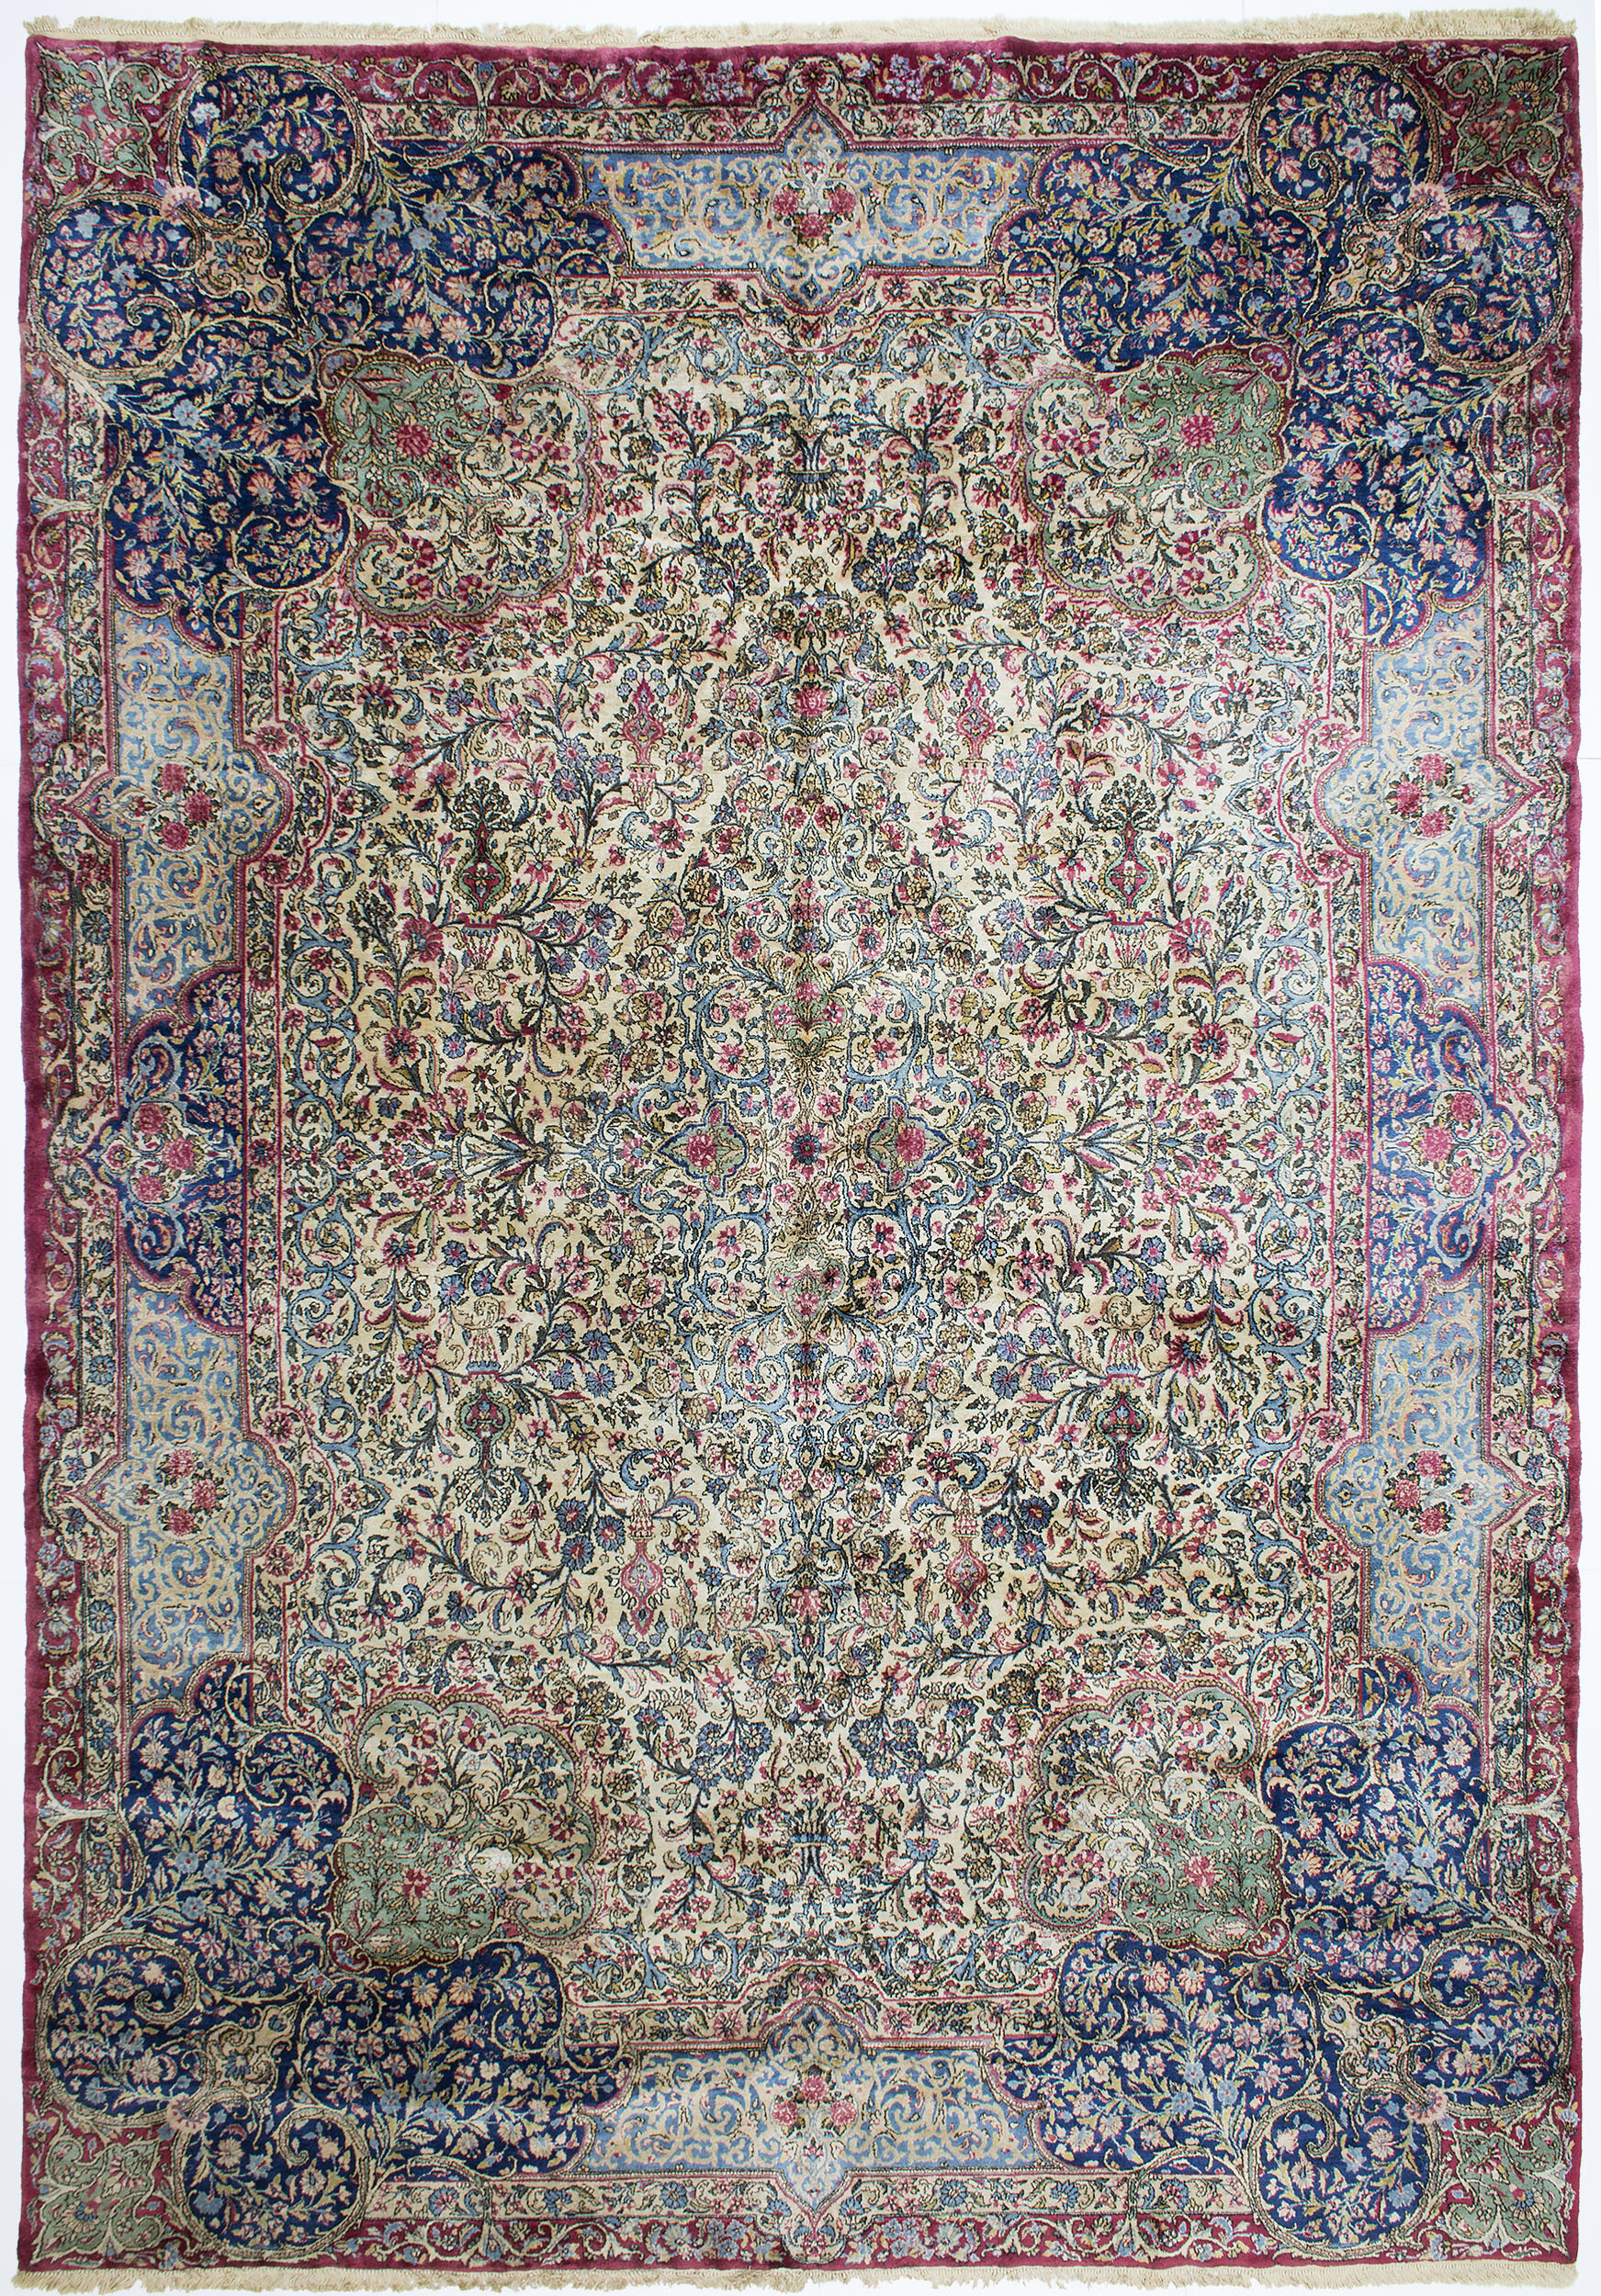 Kerman Carpet 13' 9" x 9' 6" 